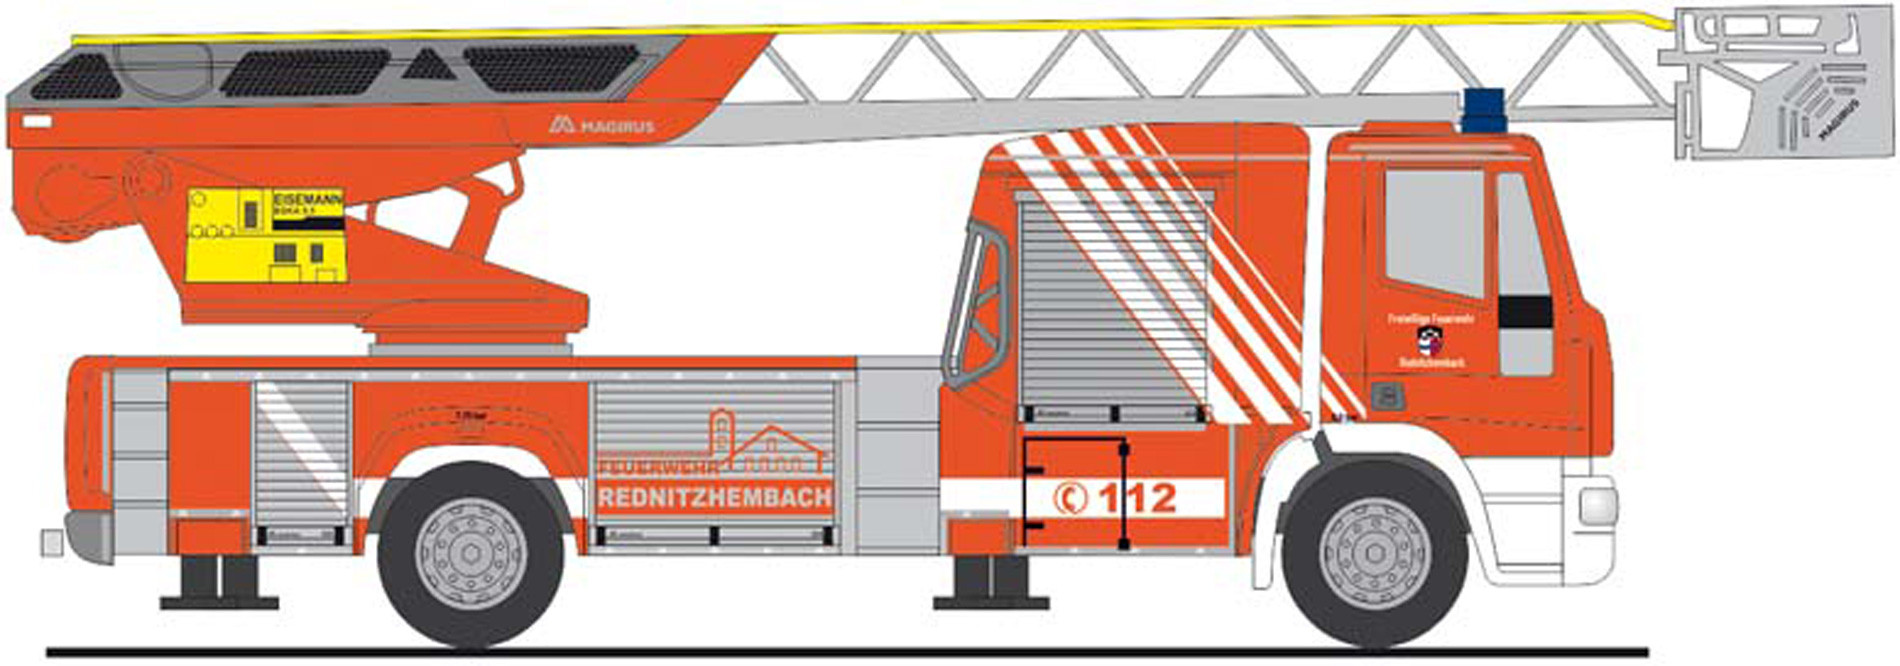 Rietze IVECO DLK L32 " Feuerwehr Rednitzhembach ", NH 01-02/21,